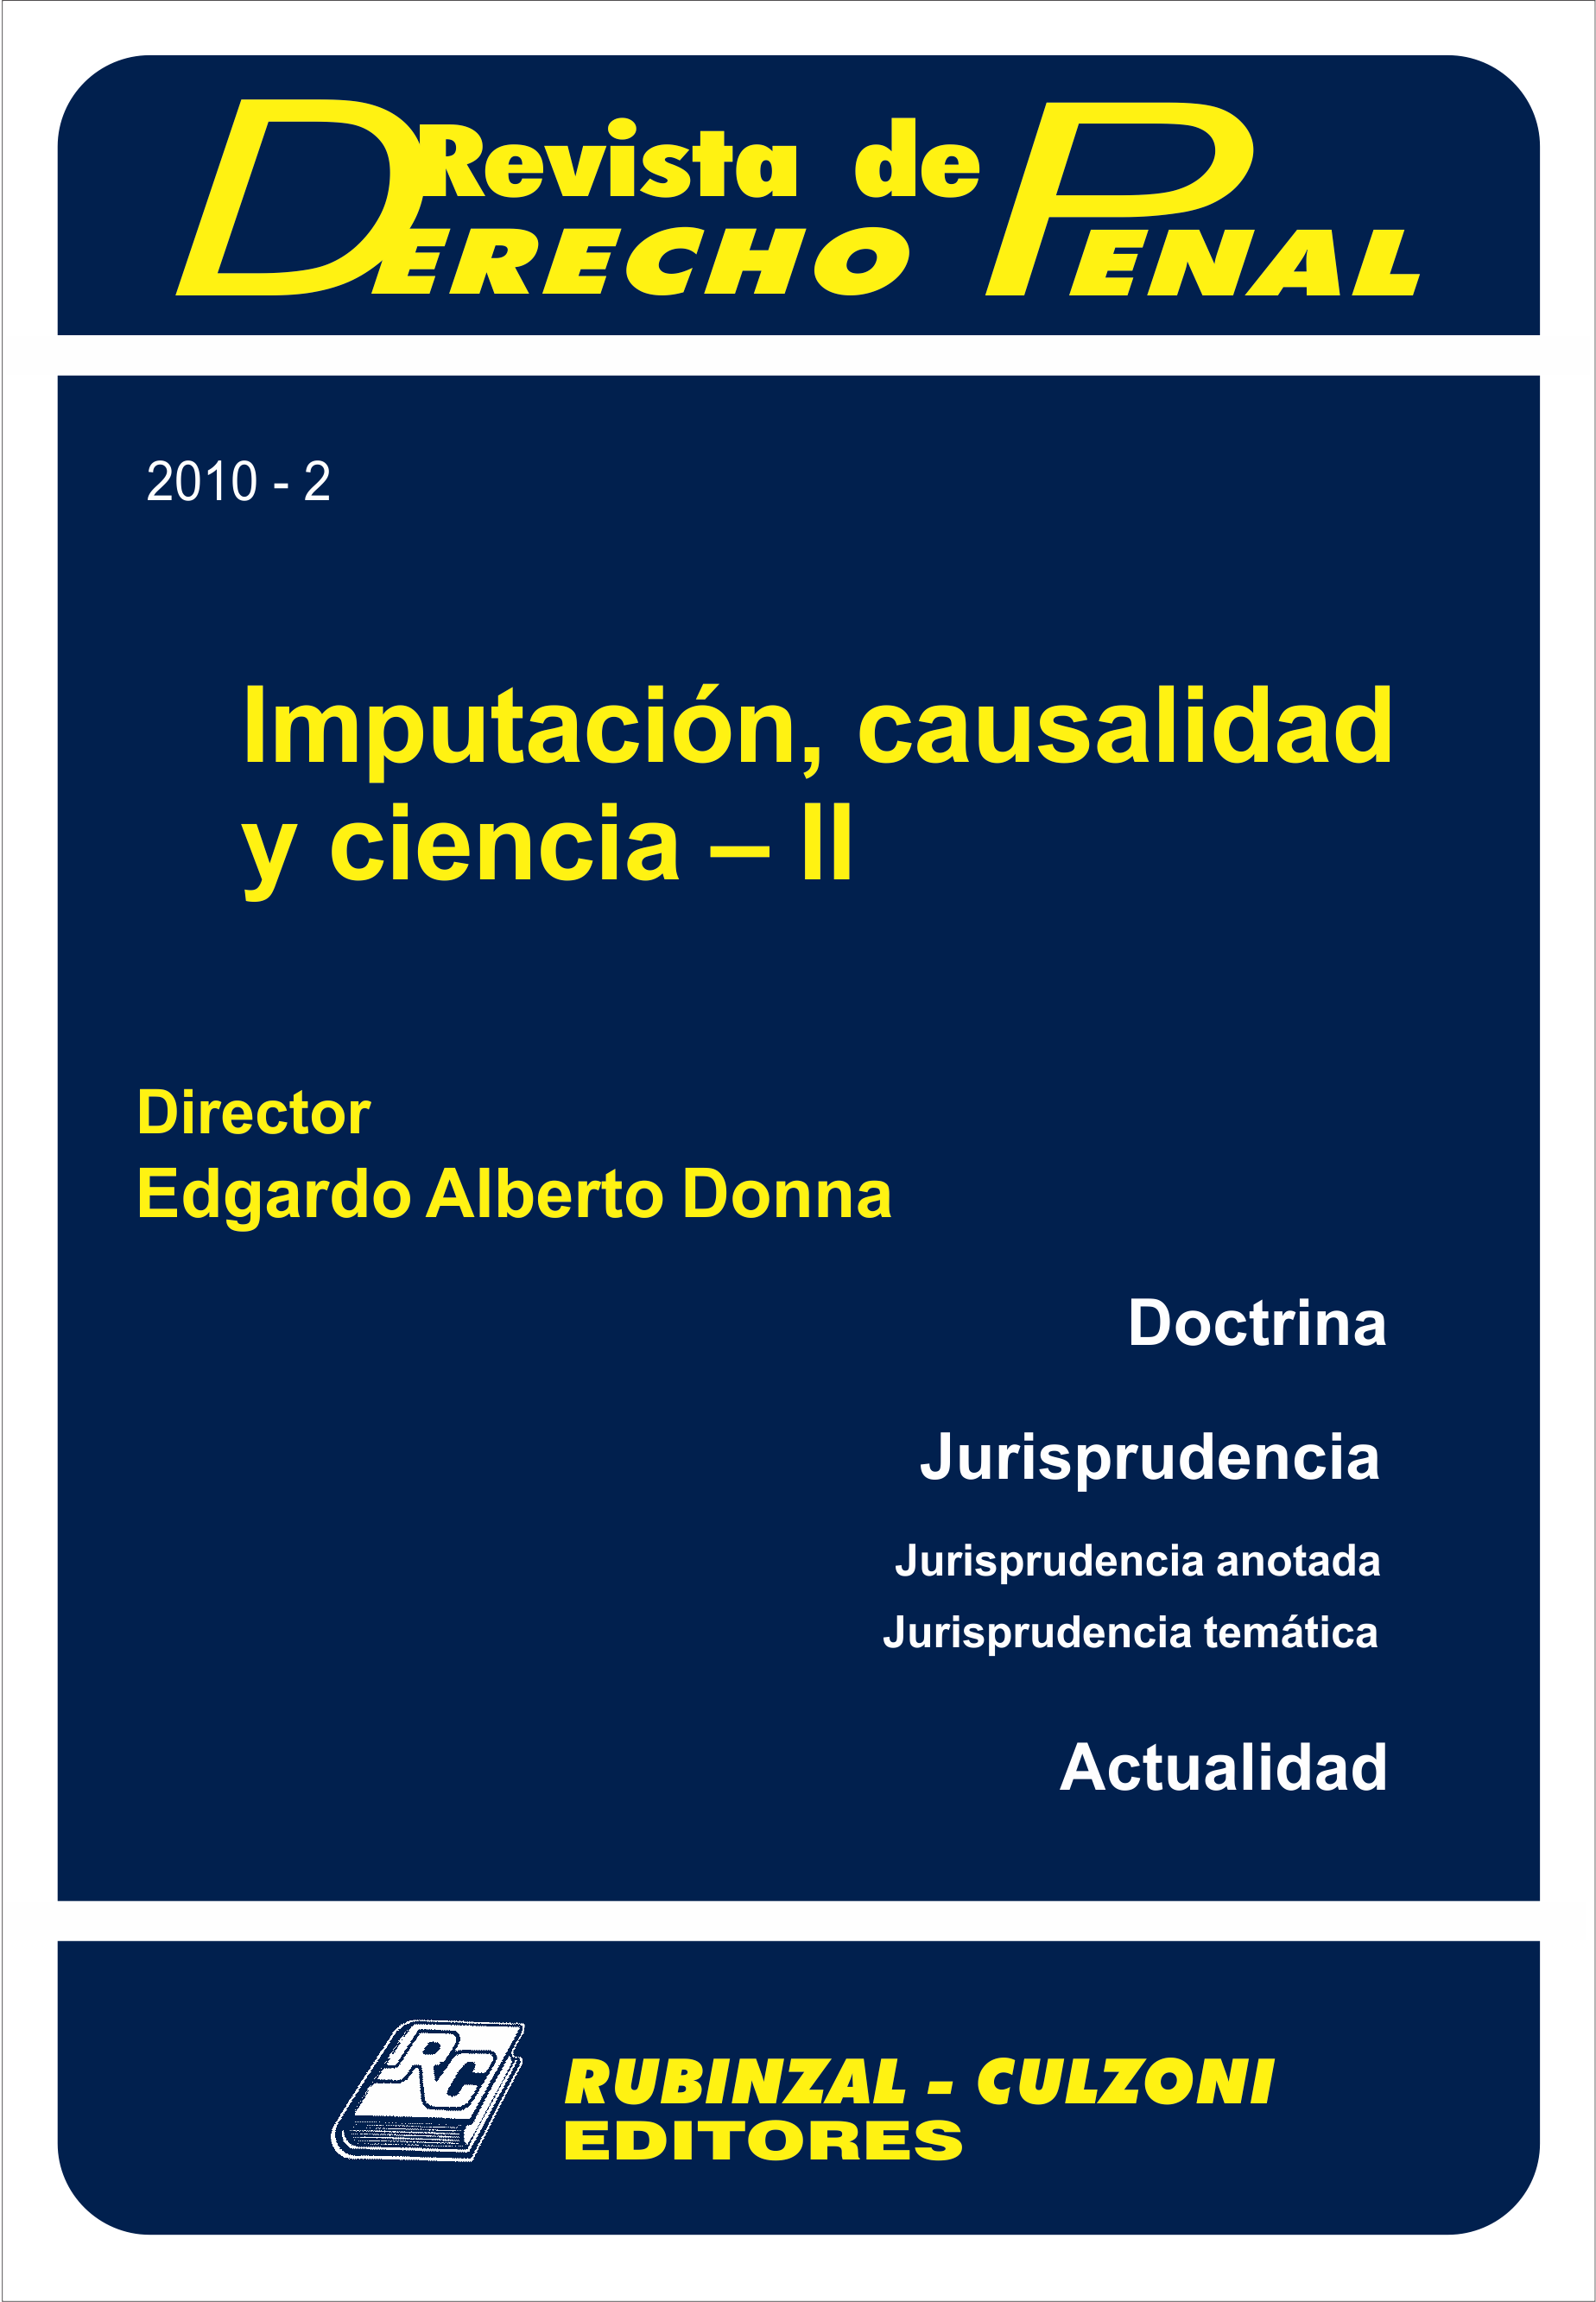 Revista de Derecho Penal - Imputación, causalidad y ciencia - II. [2010-2]